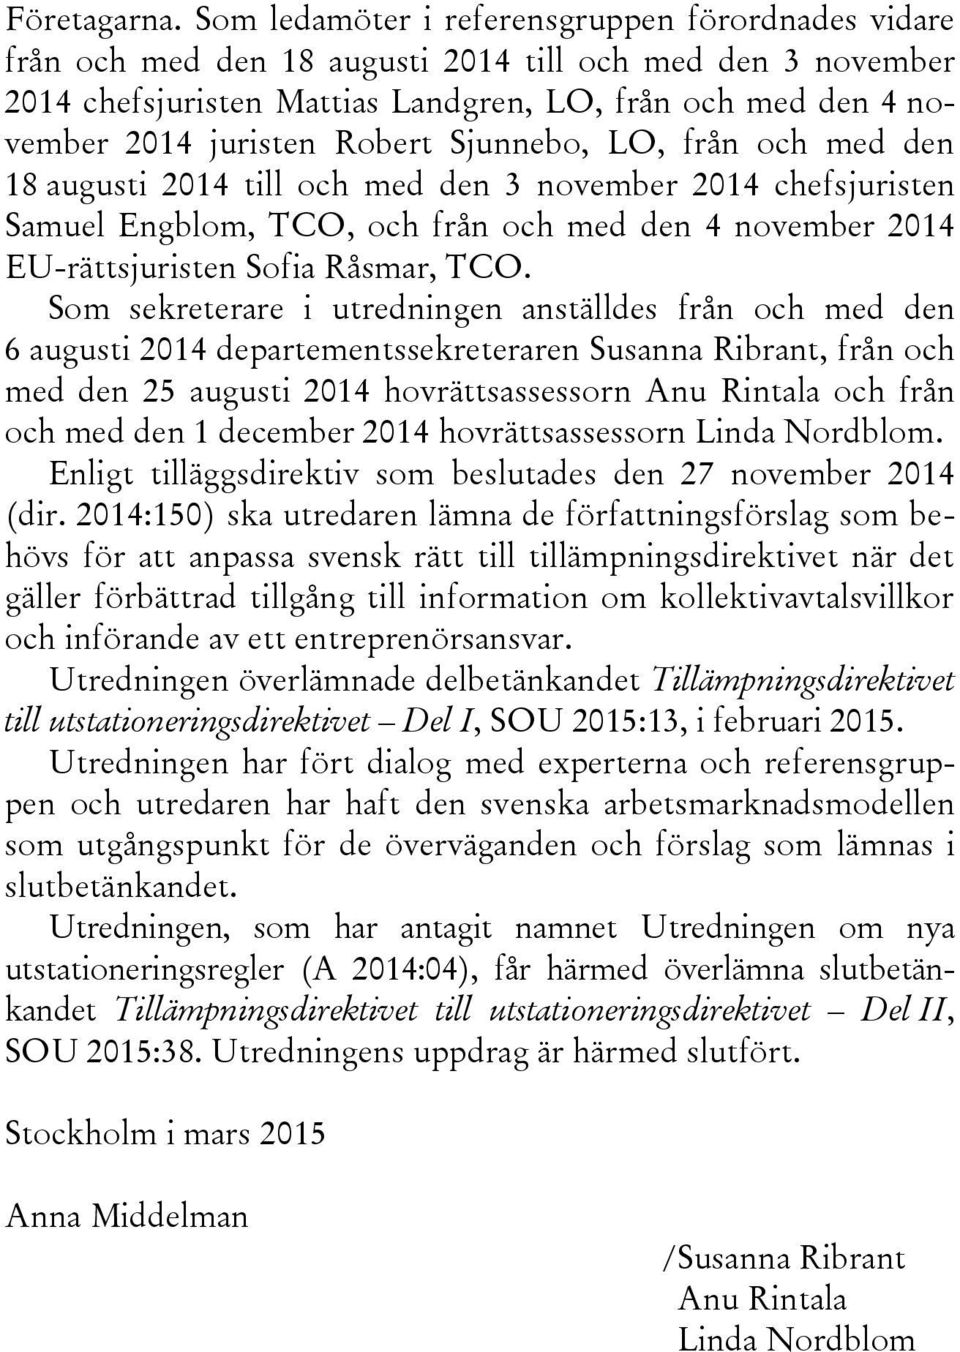 Robert Sjunnebo, LO, från och med den 18 augusti 2014 till och med den 3 november 2014 chefsjuristen Samuel Engblom, TCO, och från och med den 4 november 2014 EU-rättsjuristen Sofia Råsmar, TCO.